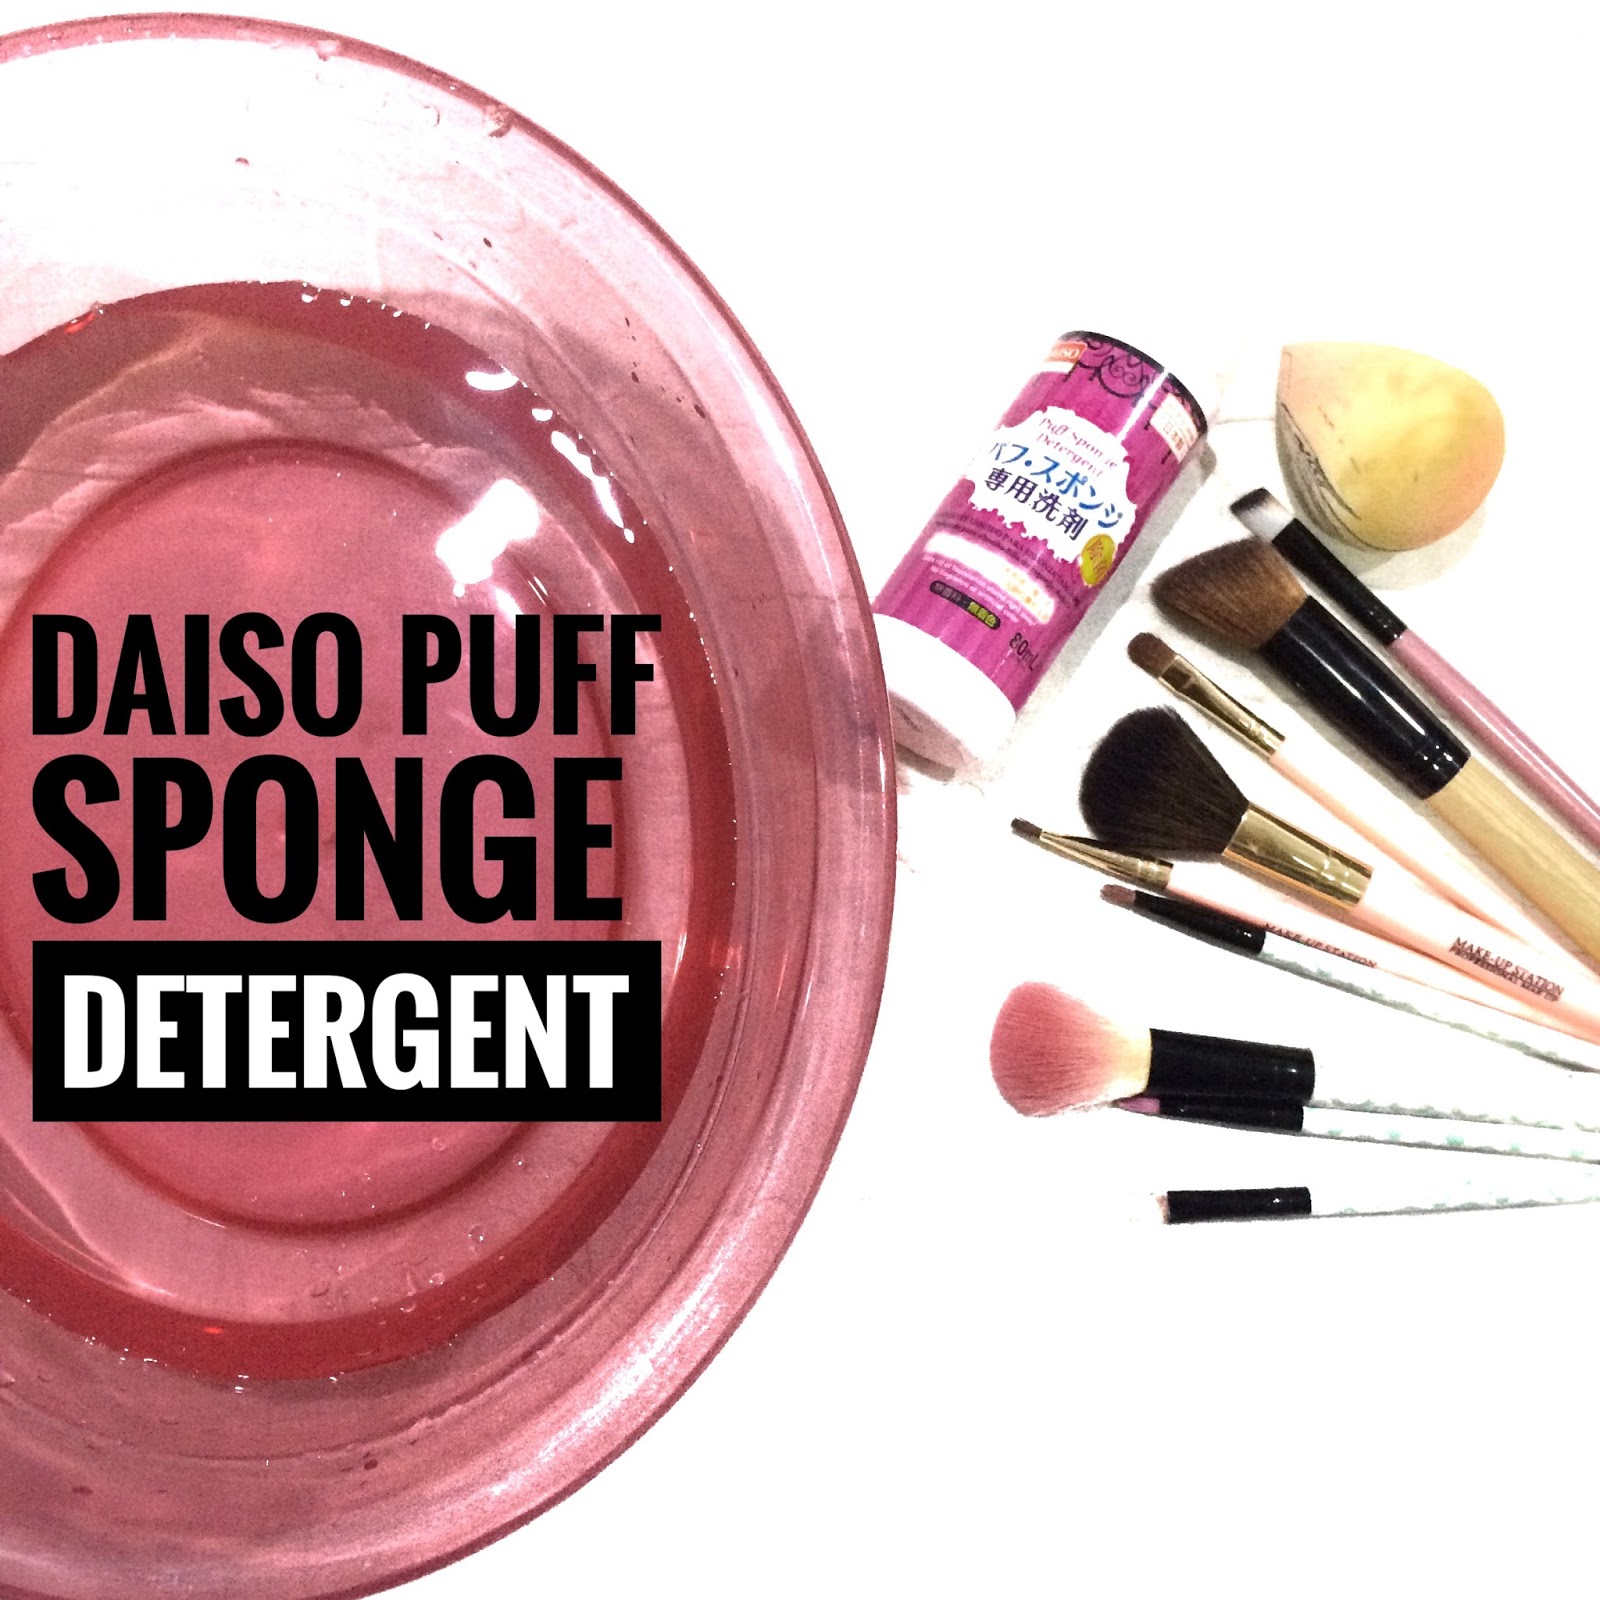 Daiso Puff Sponge Detergent Bagus ke? 